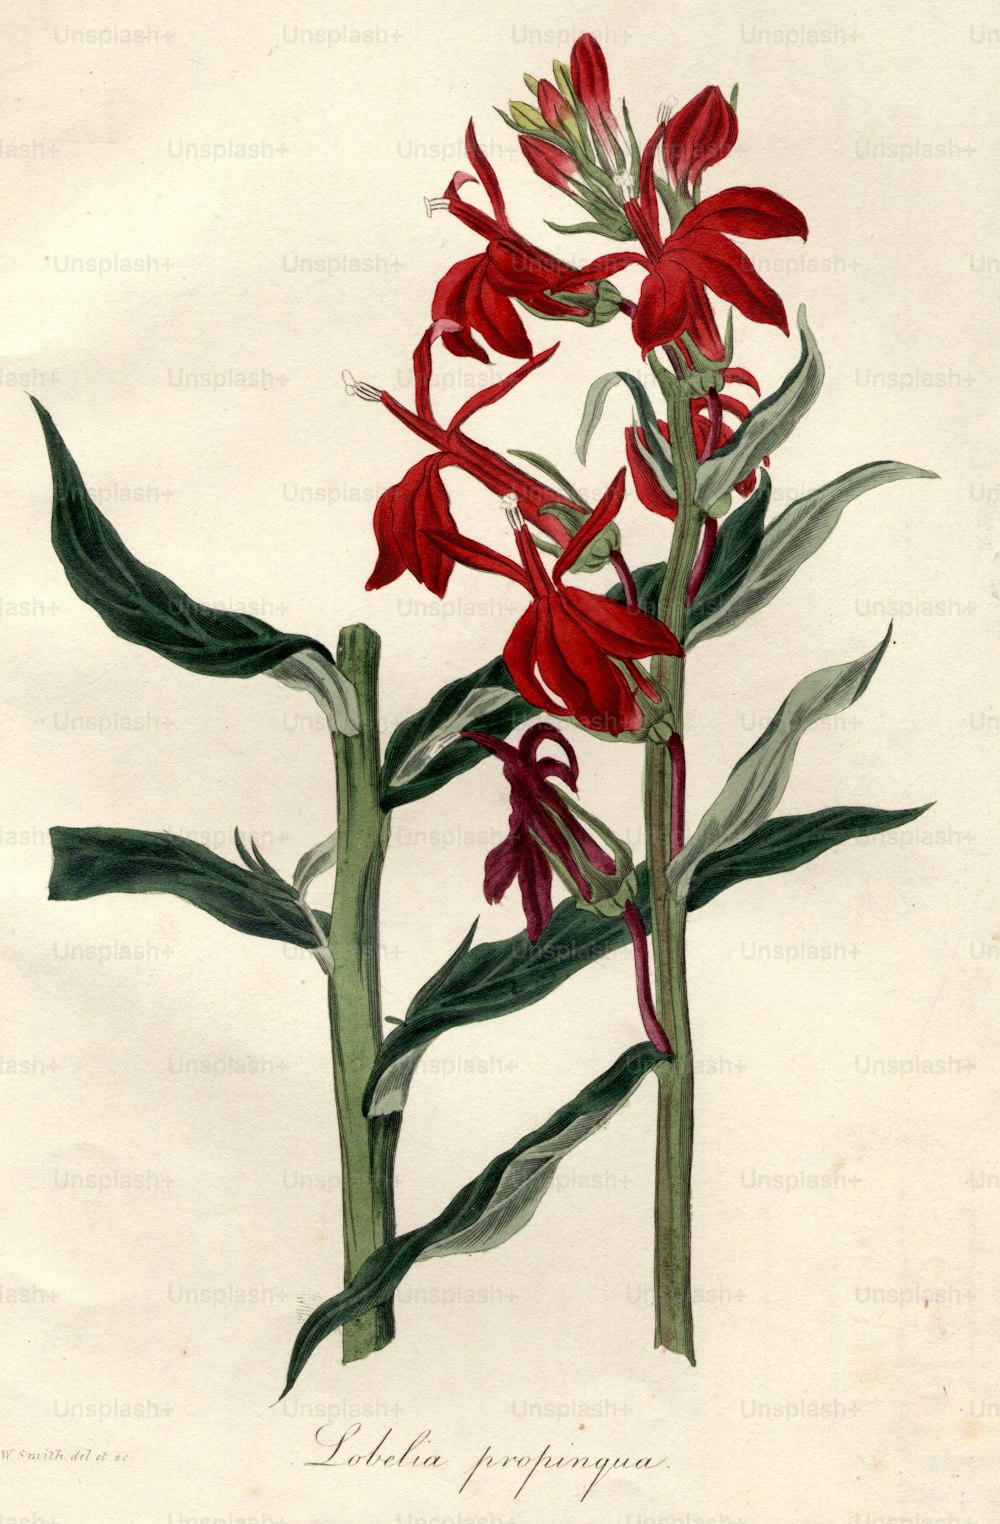 circa 1800:  Lobelia propinqua.  (Photo by Hulton Archive/Getty Images)